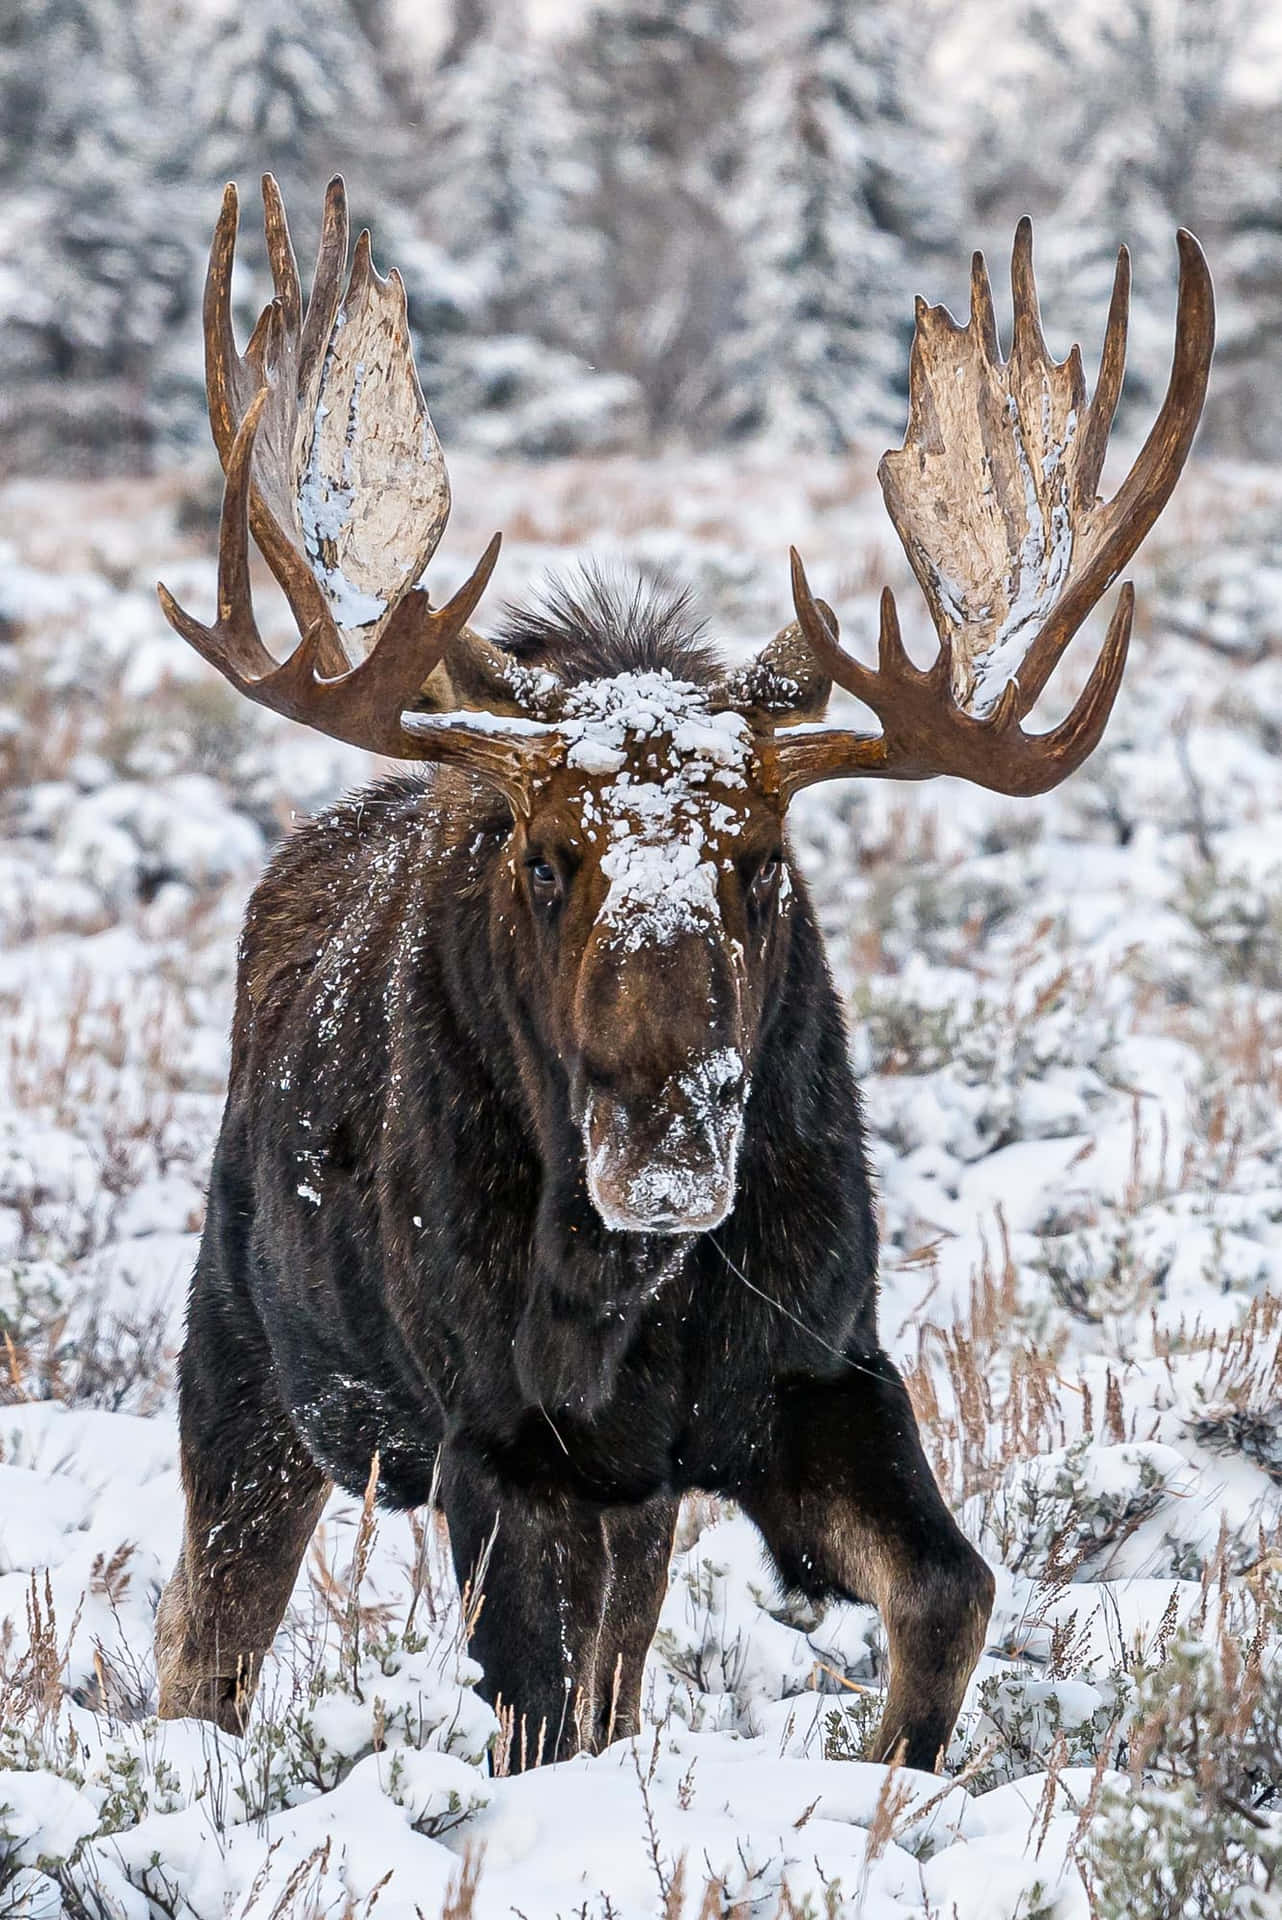 Majestic Moosein Snowy Landscape.jpg